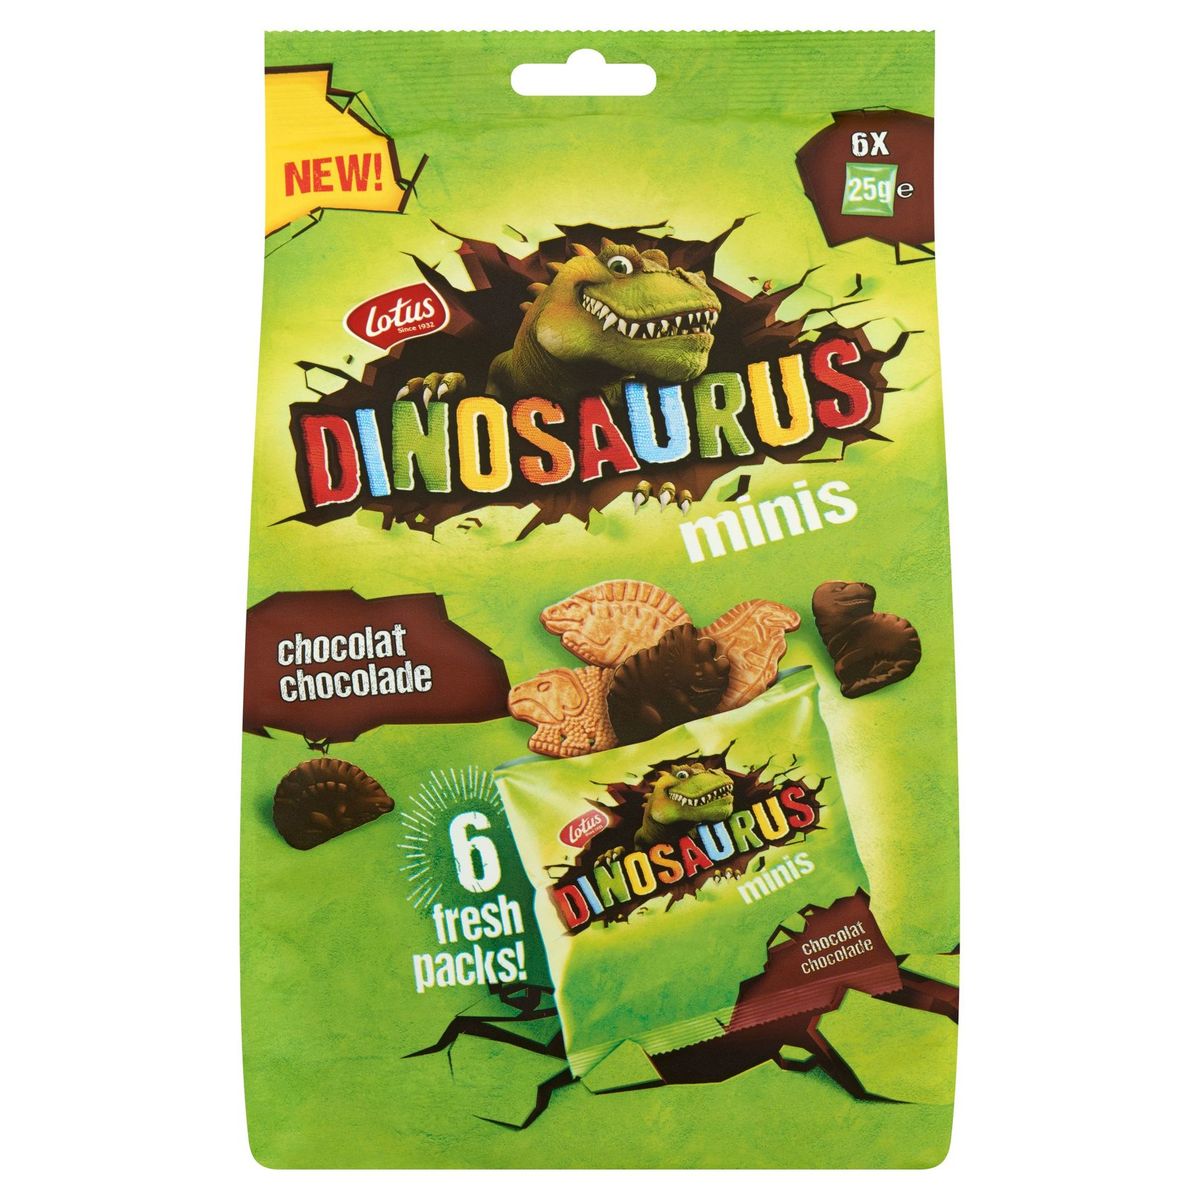 Lotus Dinosaurus Chocolade Minis 6 x 25 g